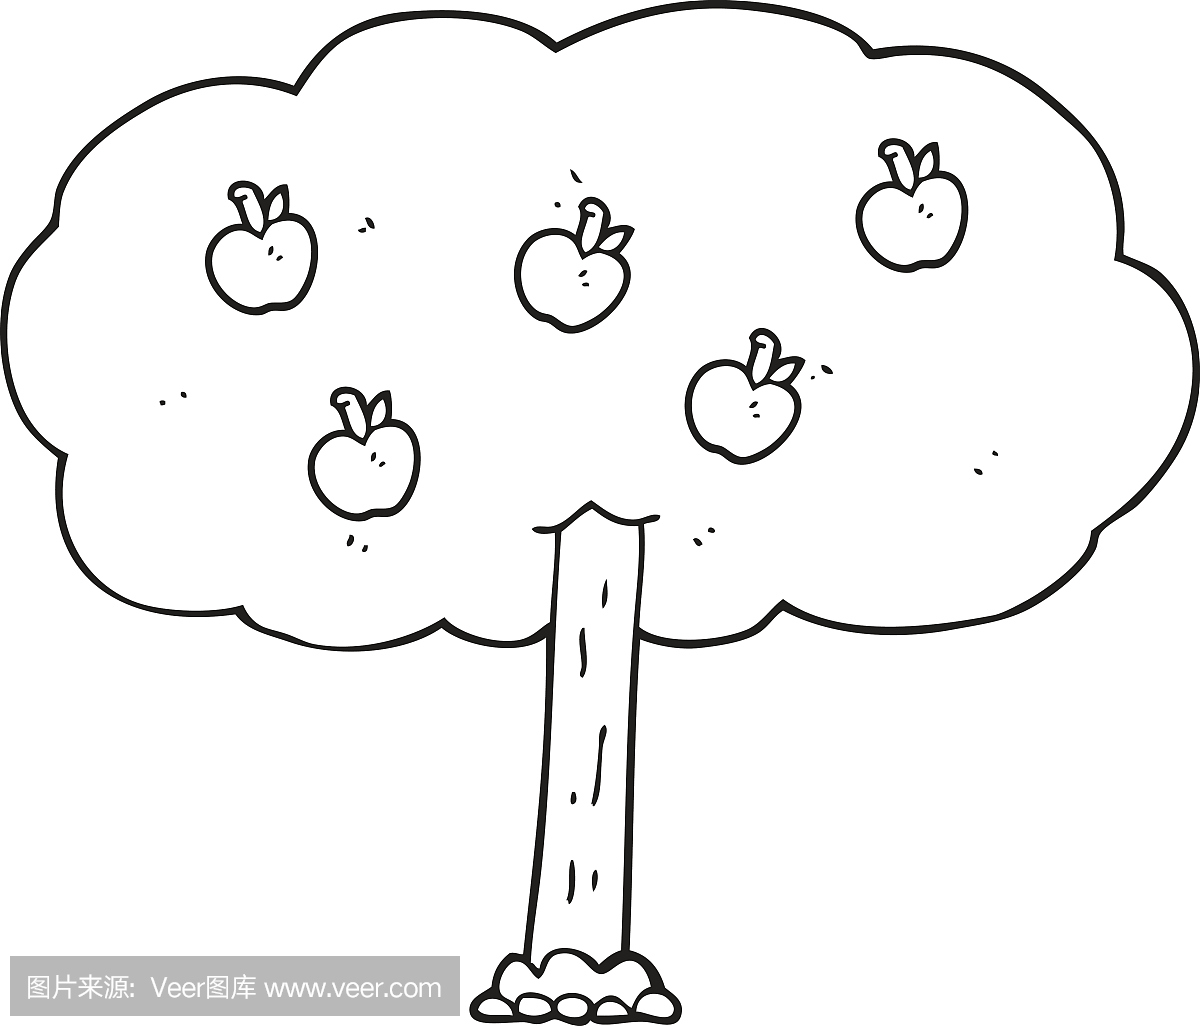 黑白卡通苹果树